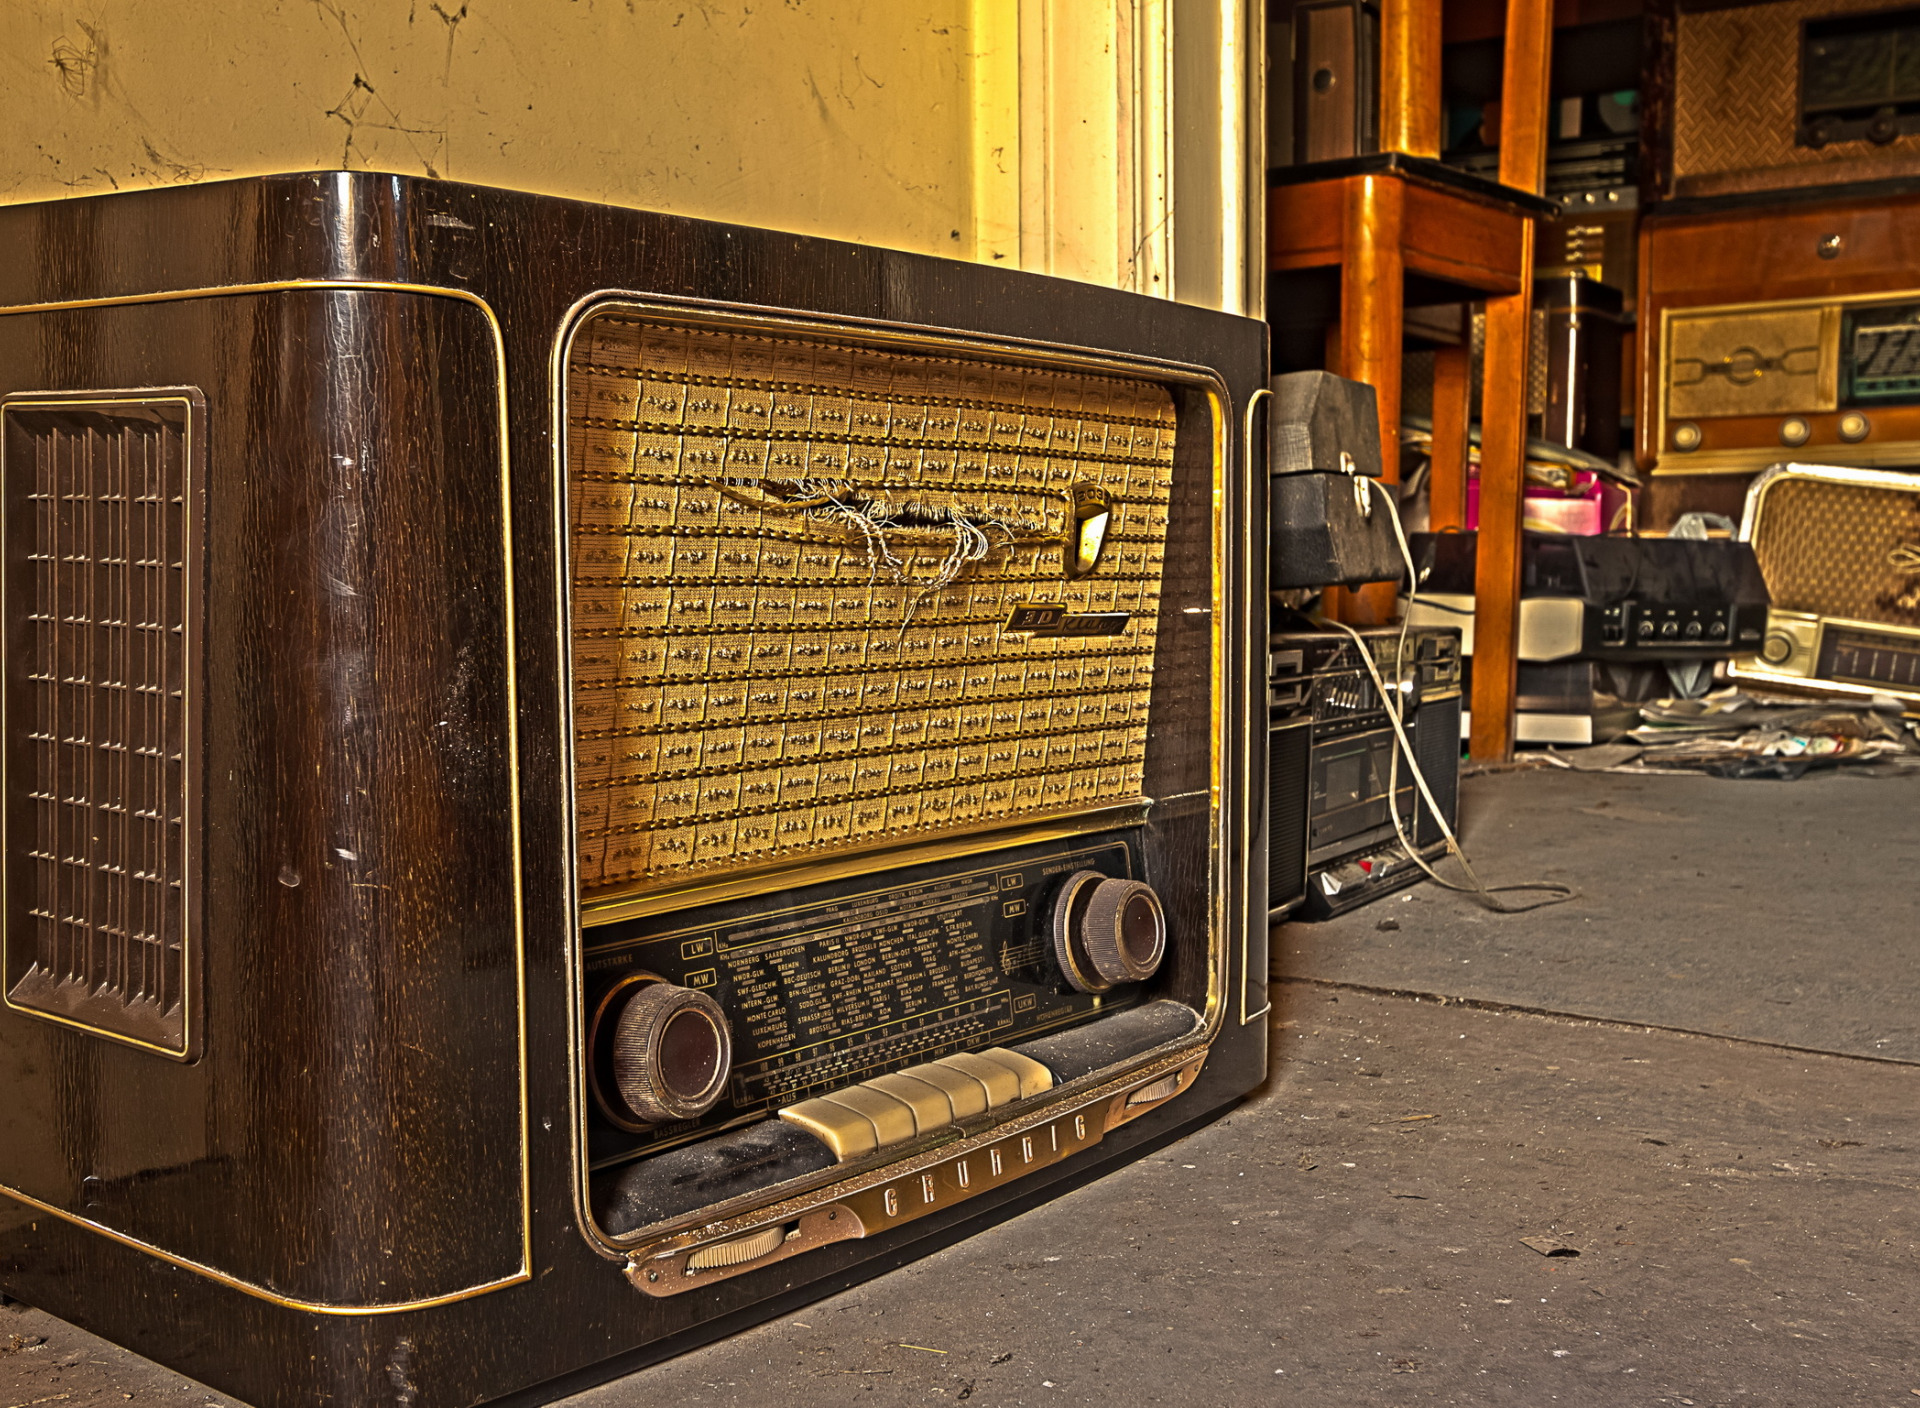 Сайт старое радио. Старый радиоприемник. Ретро радиоприемник. Старинные американские радиоприемники. Старый радиоприемник фон.